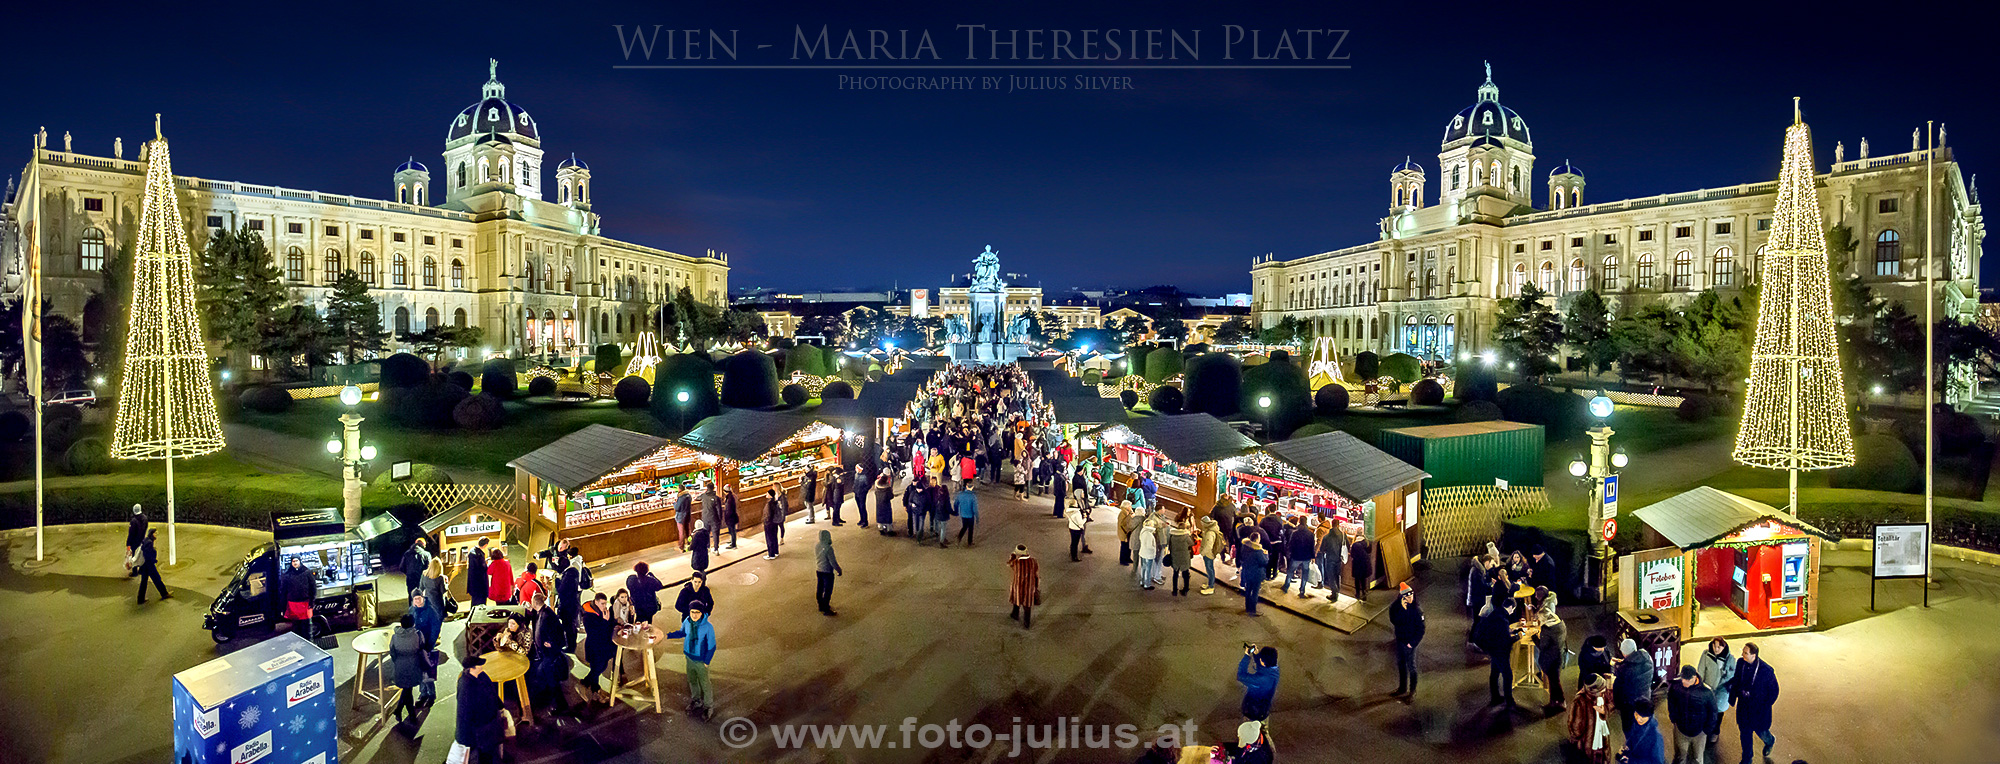 W6597a_Wien_Weihnachtsmarkt_Maria_Theresien_Platz.jpg, 884kB